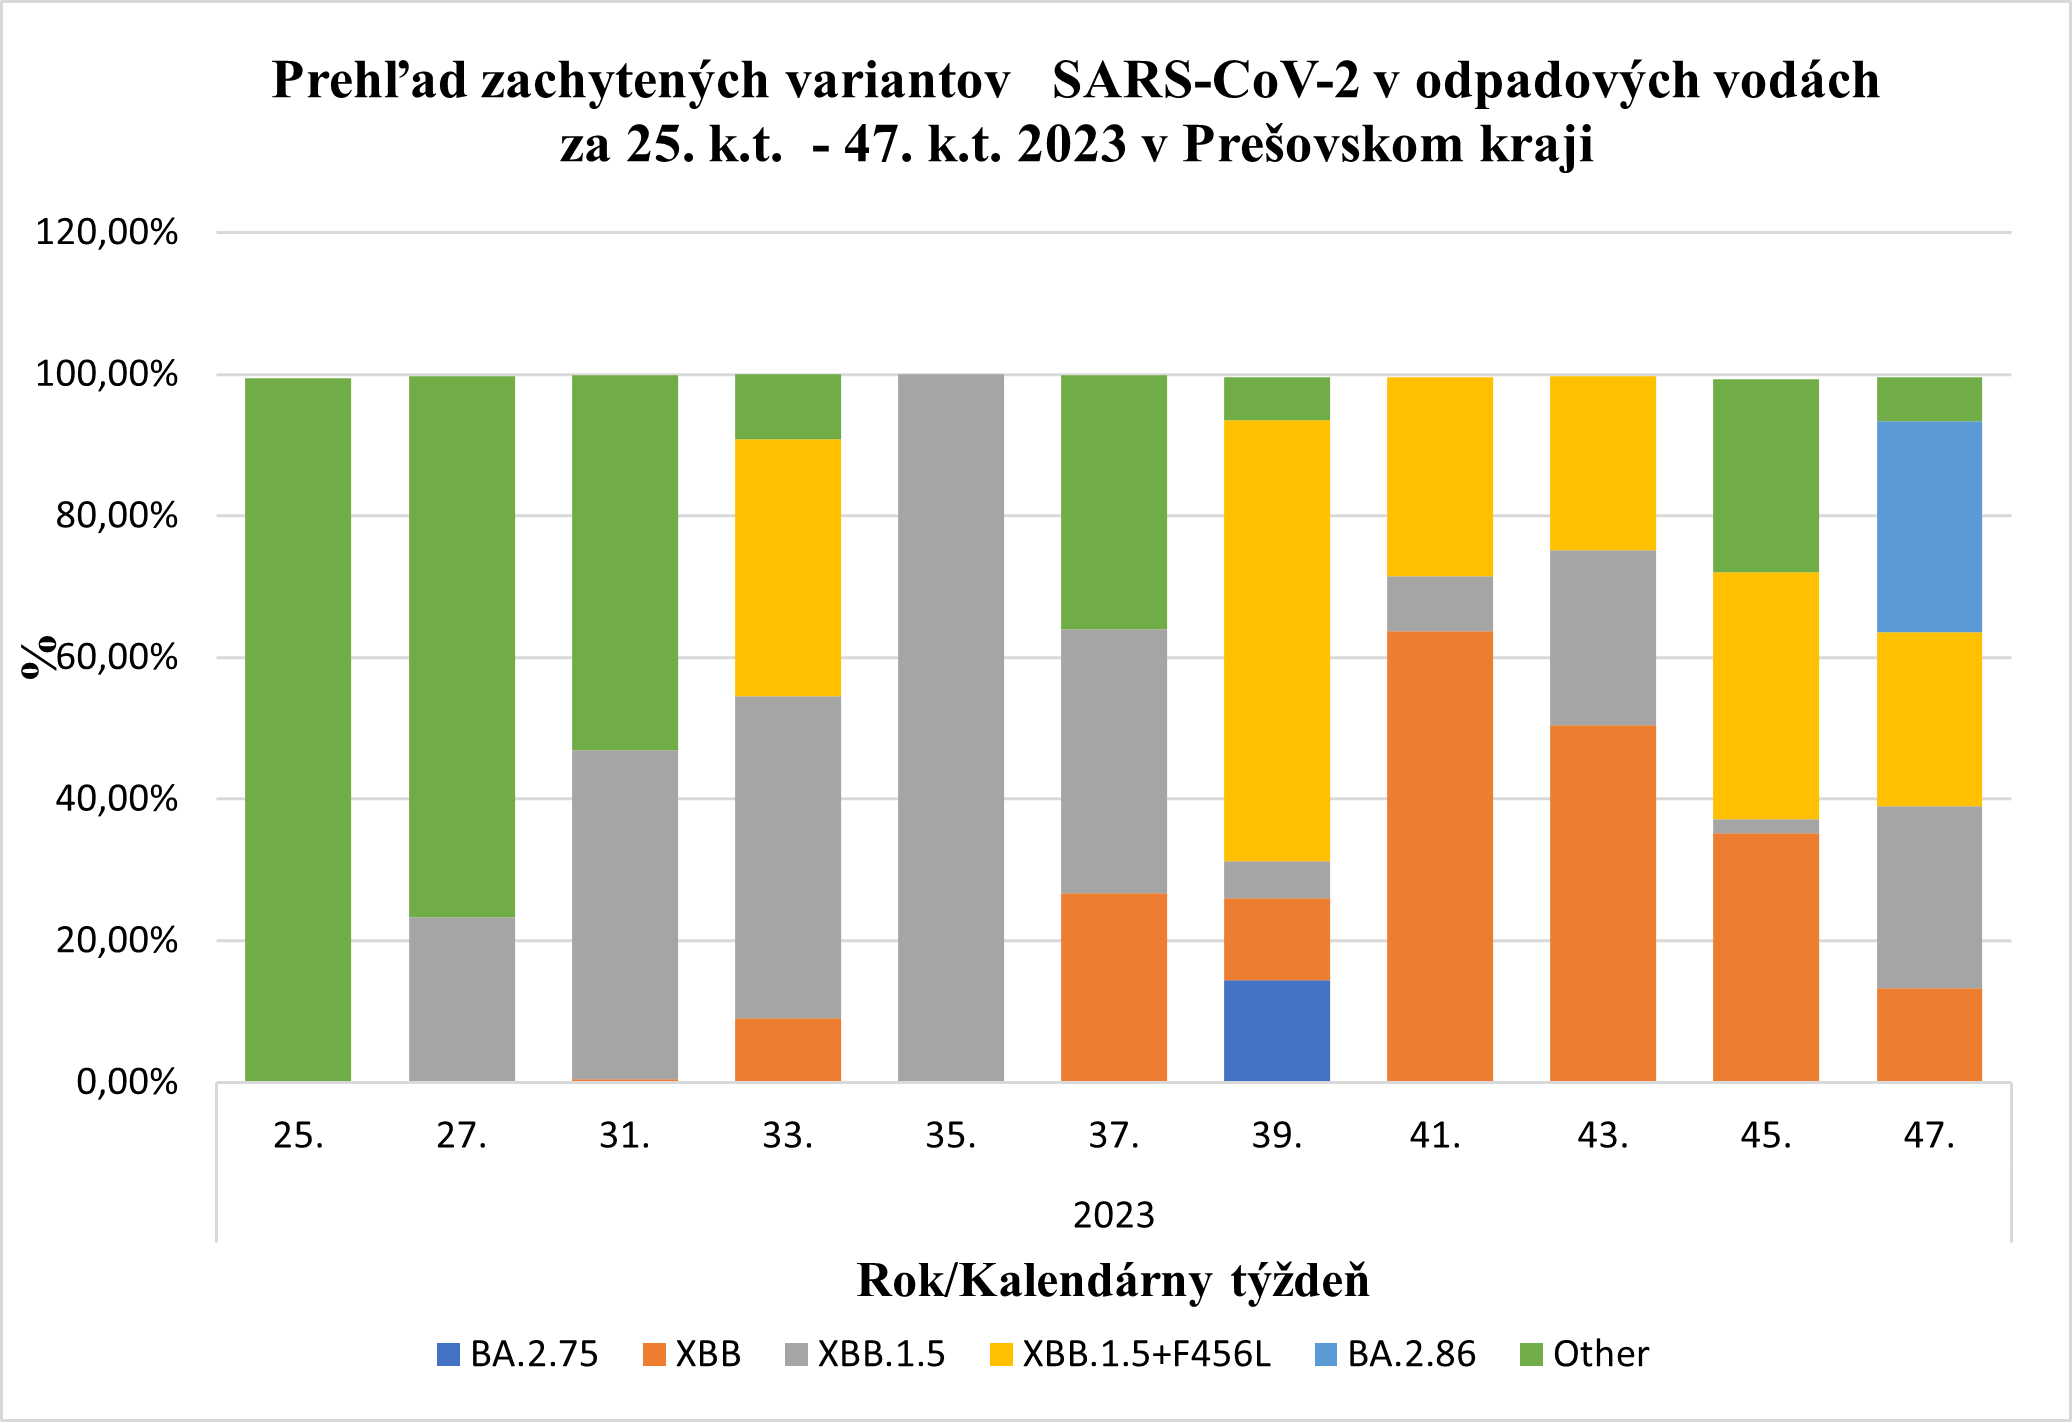 Podiel variantov SARS-CoV2 v Prešovskom kraji